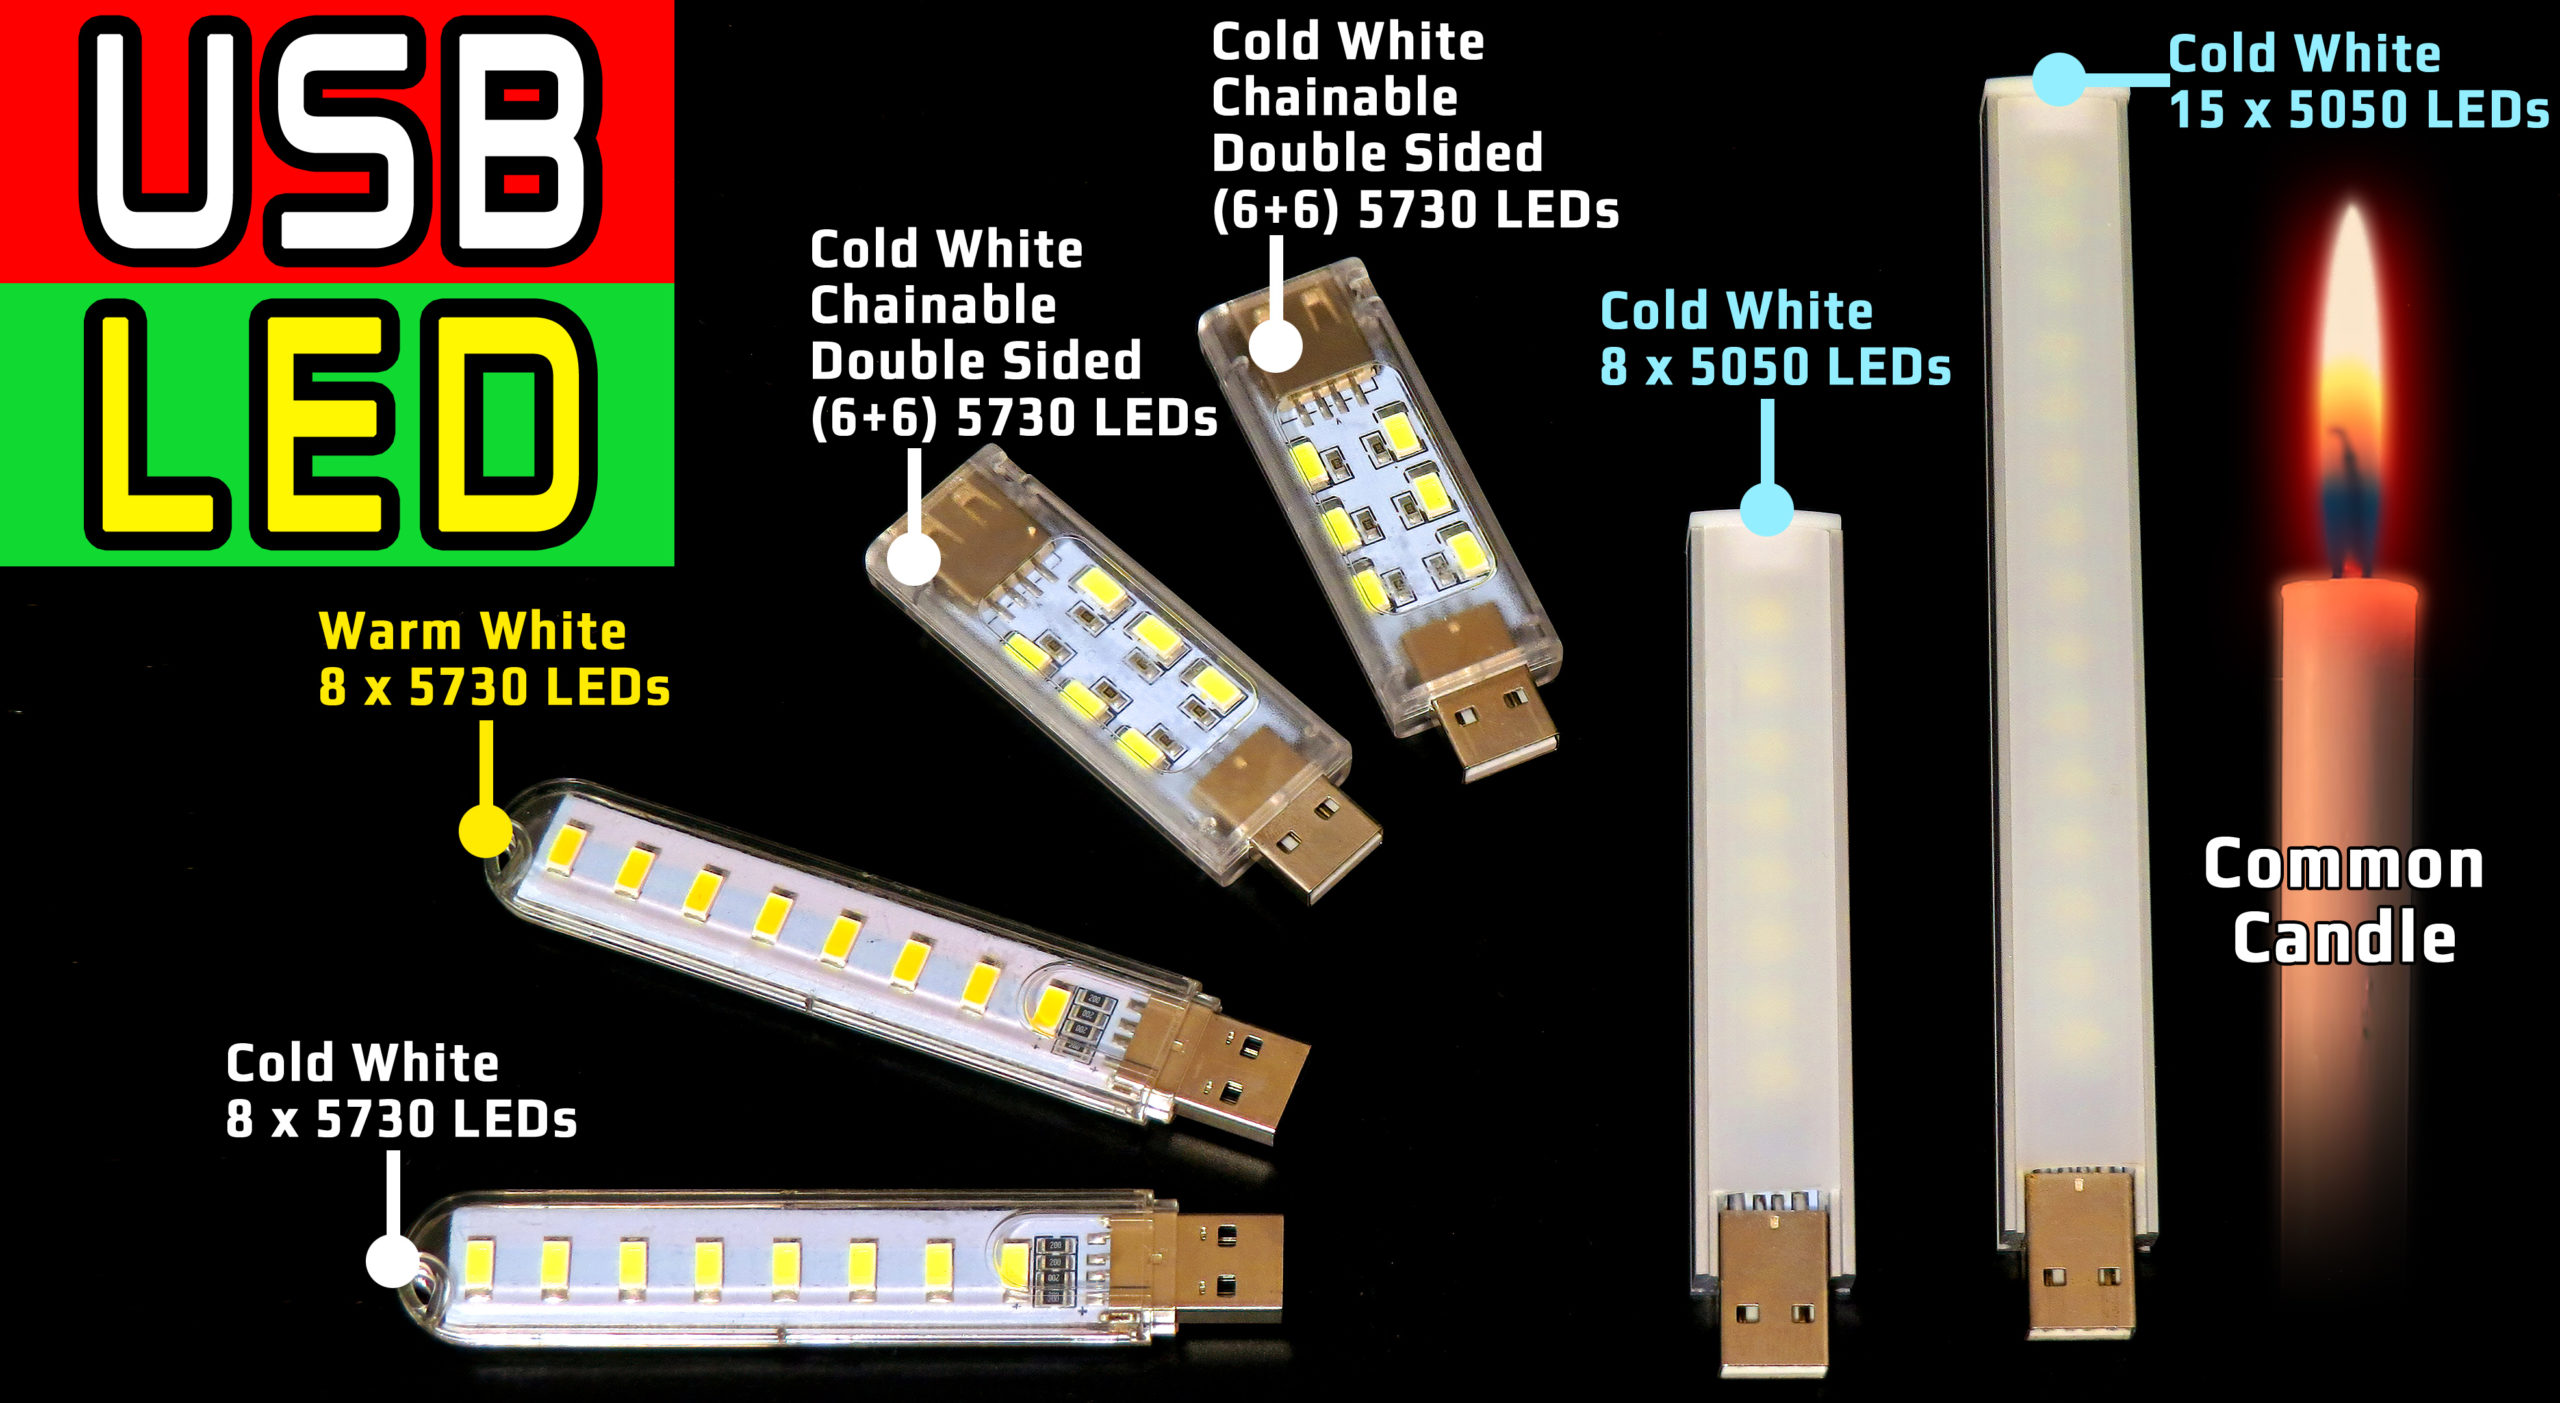 REVIEW USB LED Lamps Brightness & Efficiency Comparison Test 